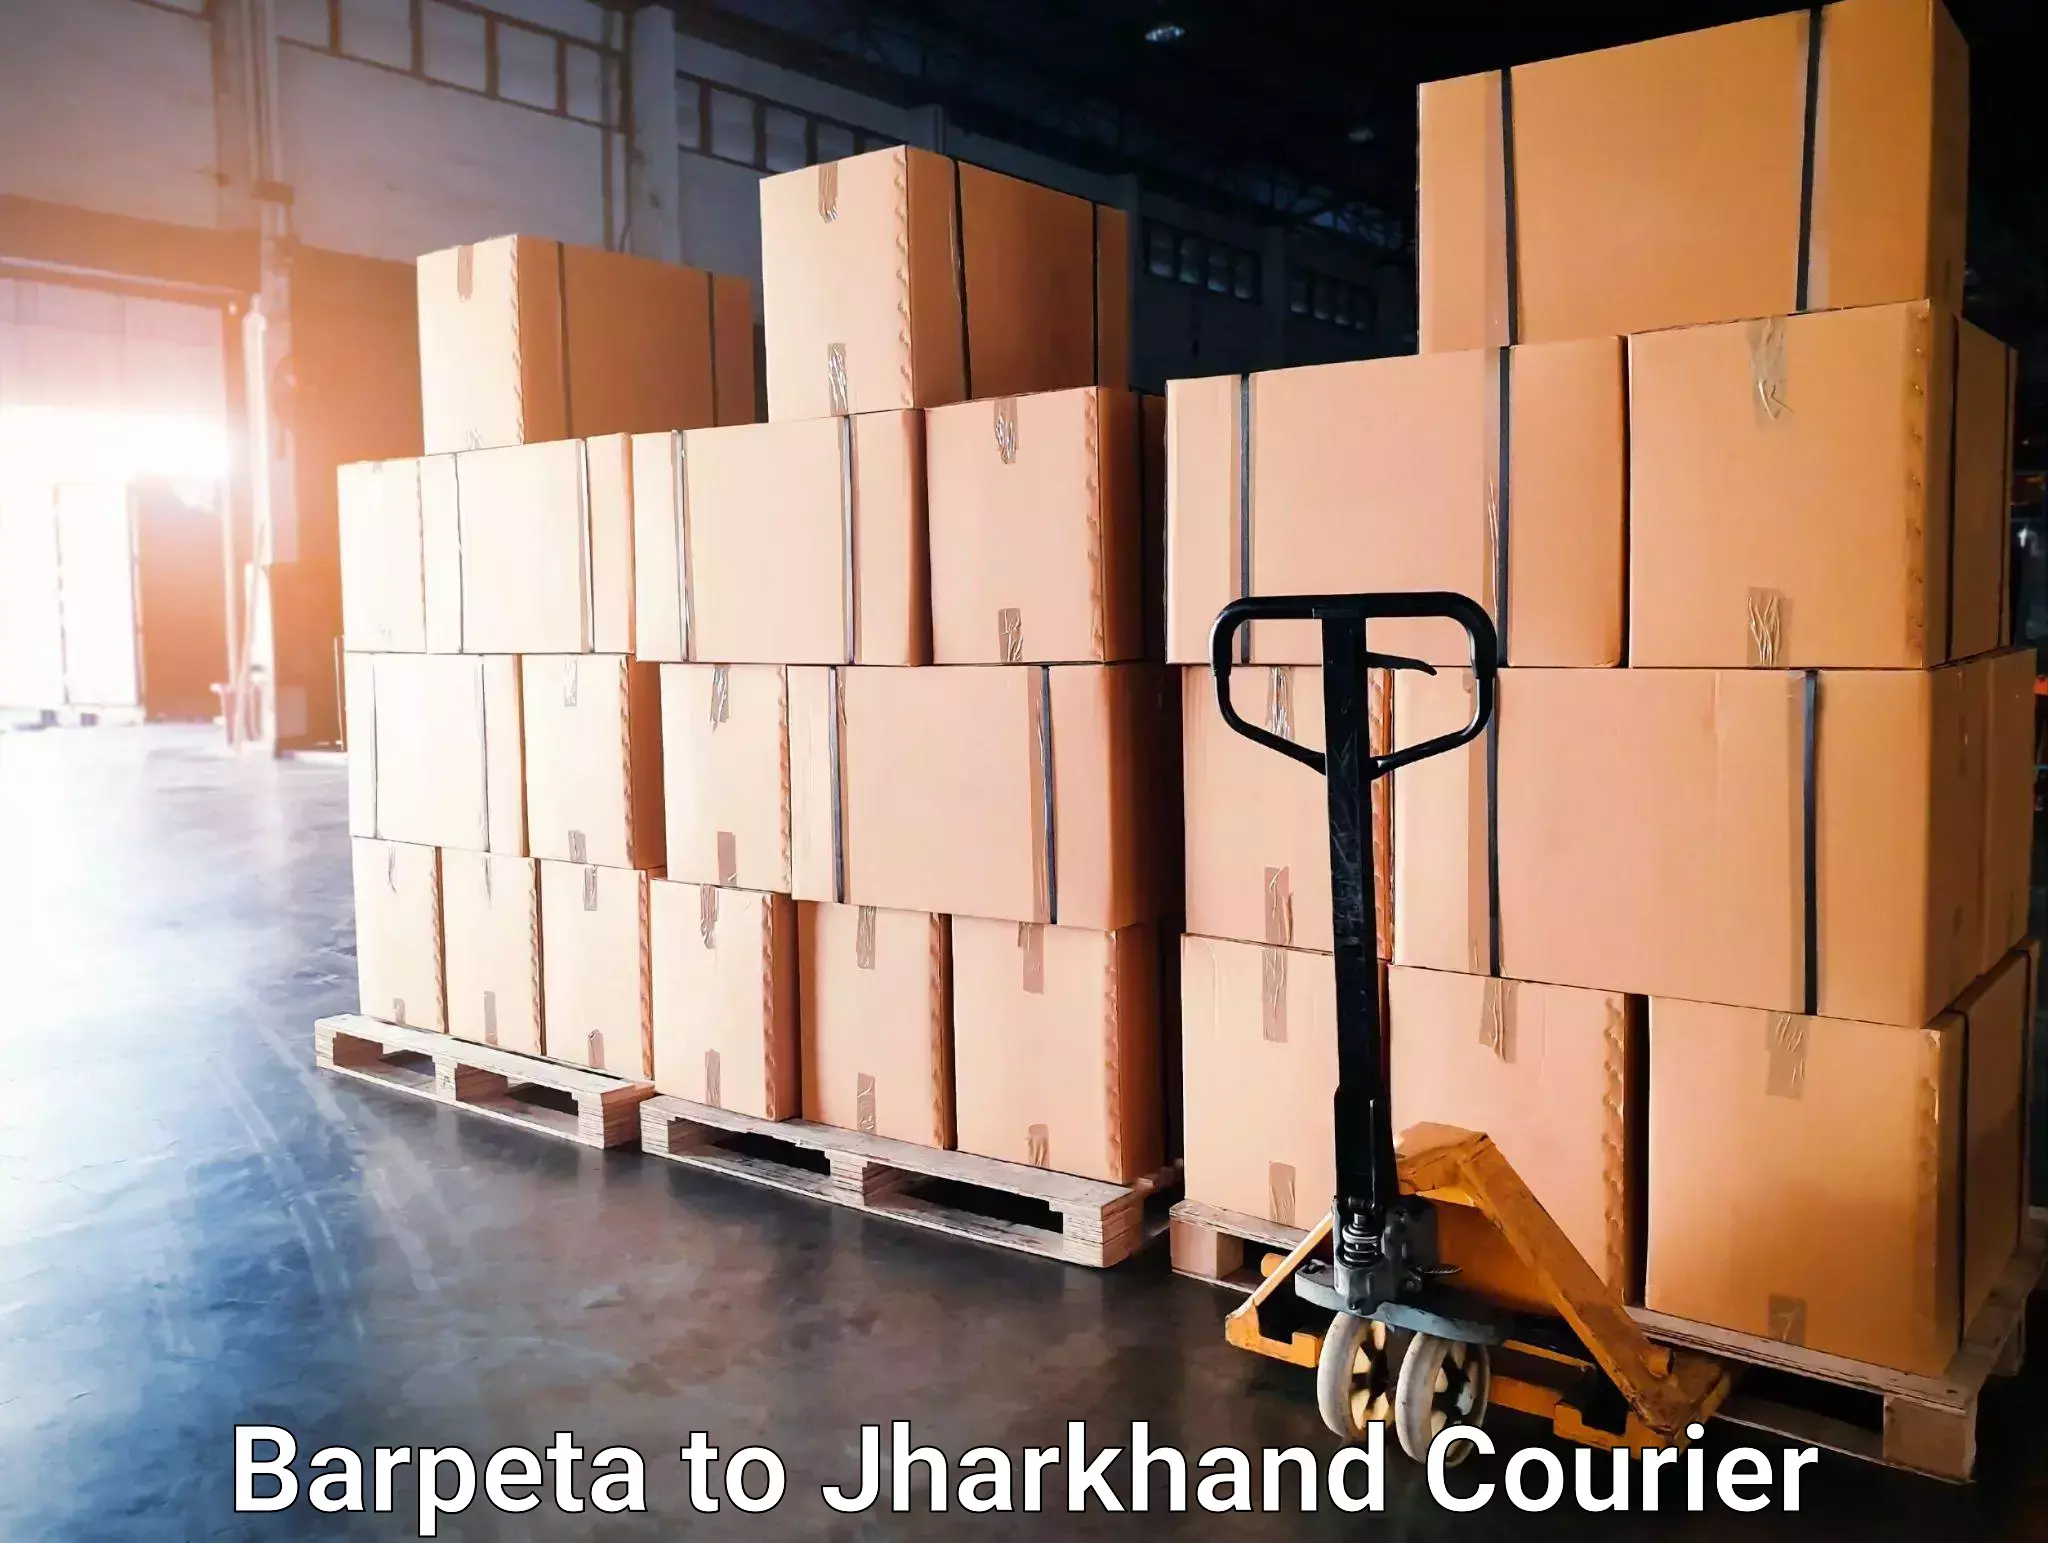 24-hour courier services Barpeta to Bokaro